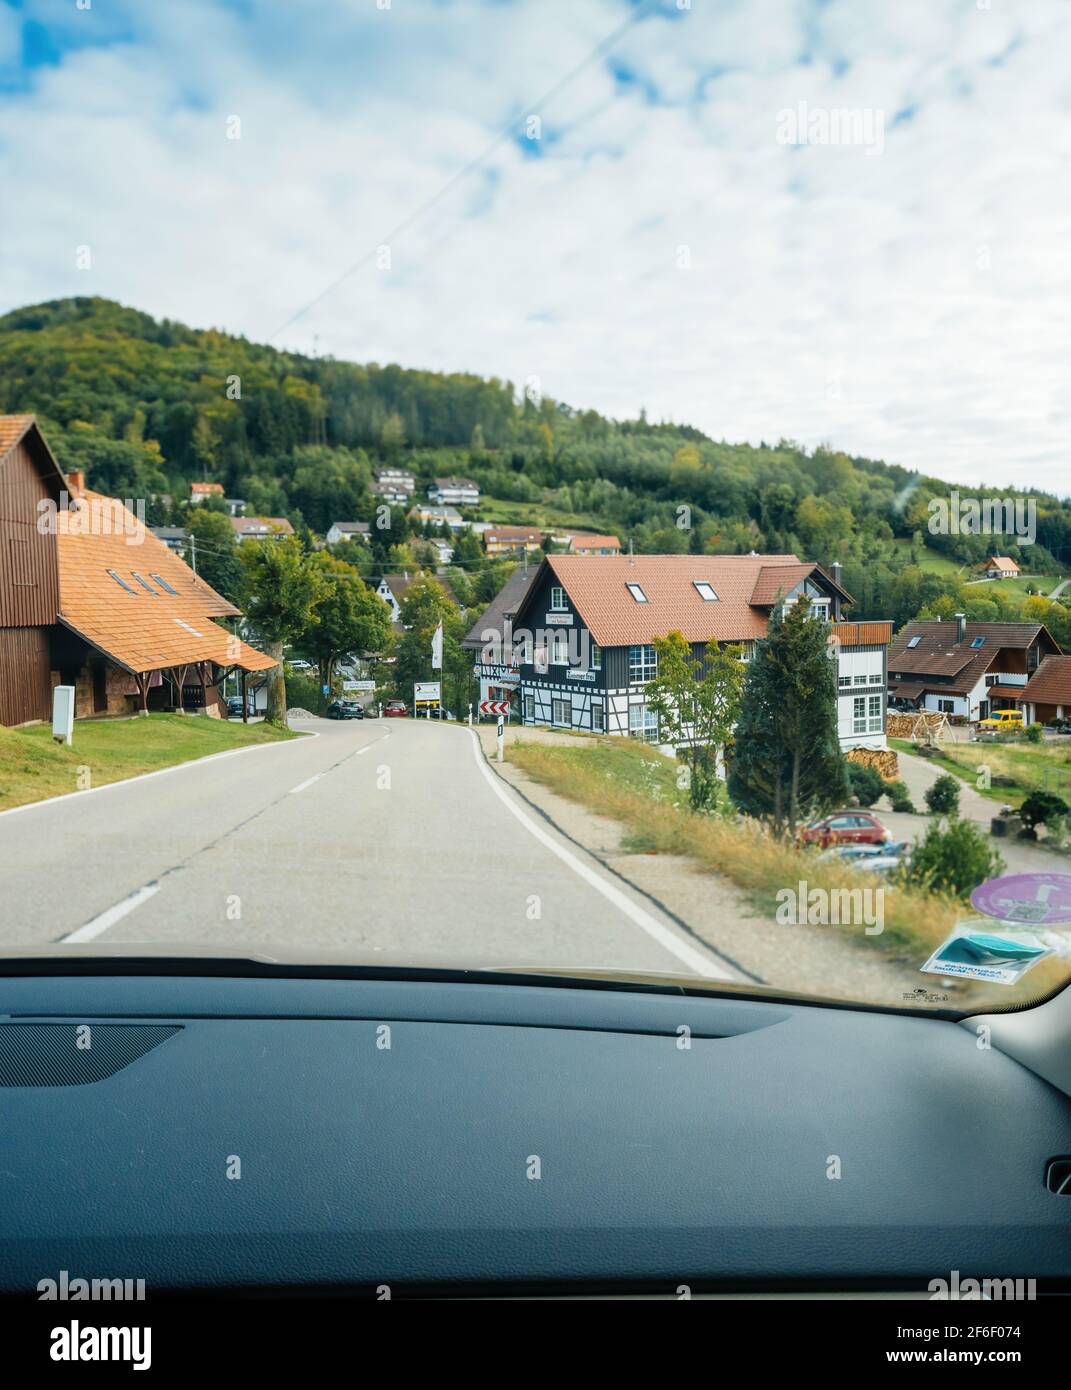 POV-Fahrerblick am Haupteingang des Dorfes Sasbachwalden In Baden-Württemberg mit mehrfachstämmig traditionellen deutschen Häusern und Gasthaus Bischenberg Stockfoto